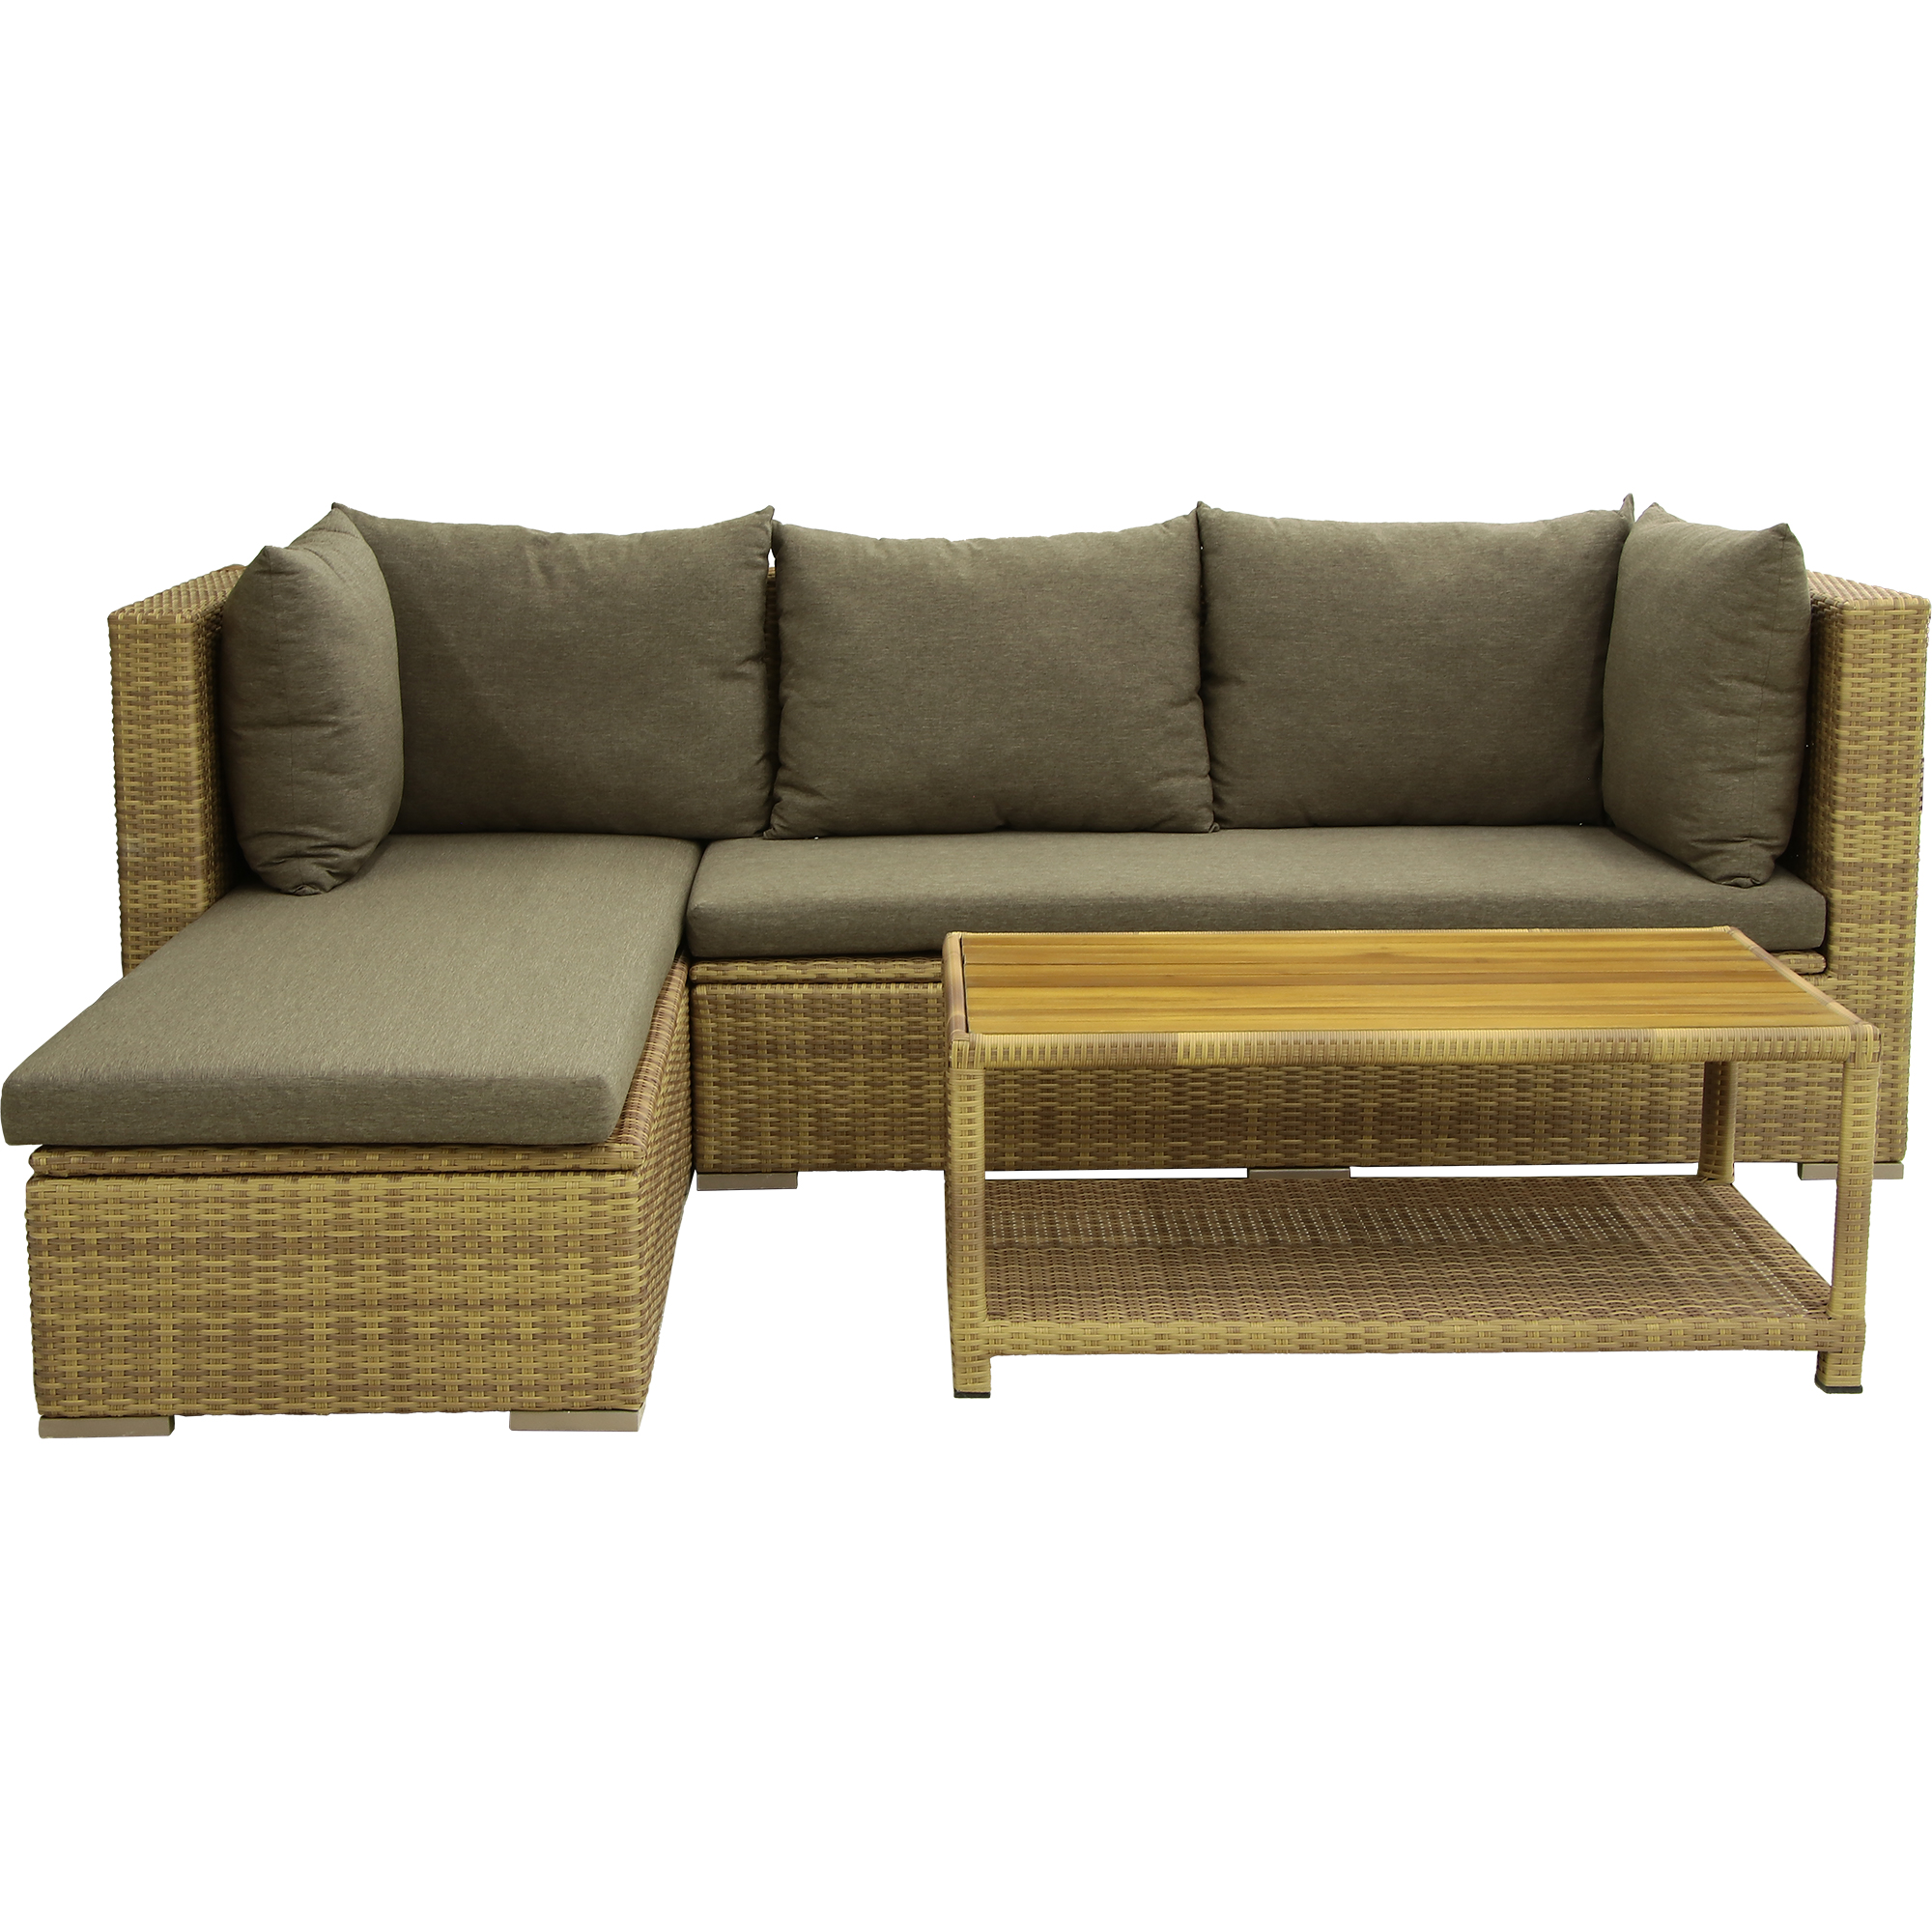 Комплект мебели Ronica Le Montat 3 предмета, цвет коричневый, размер 85х180х89 / 85х182х89 - фото 1